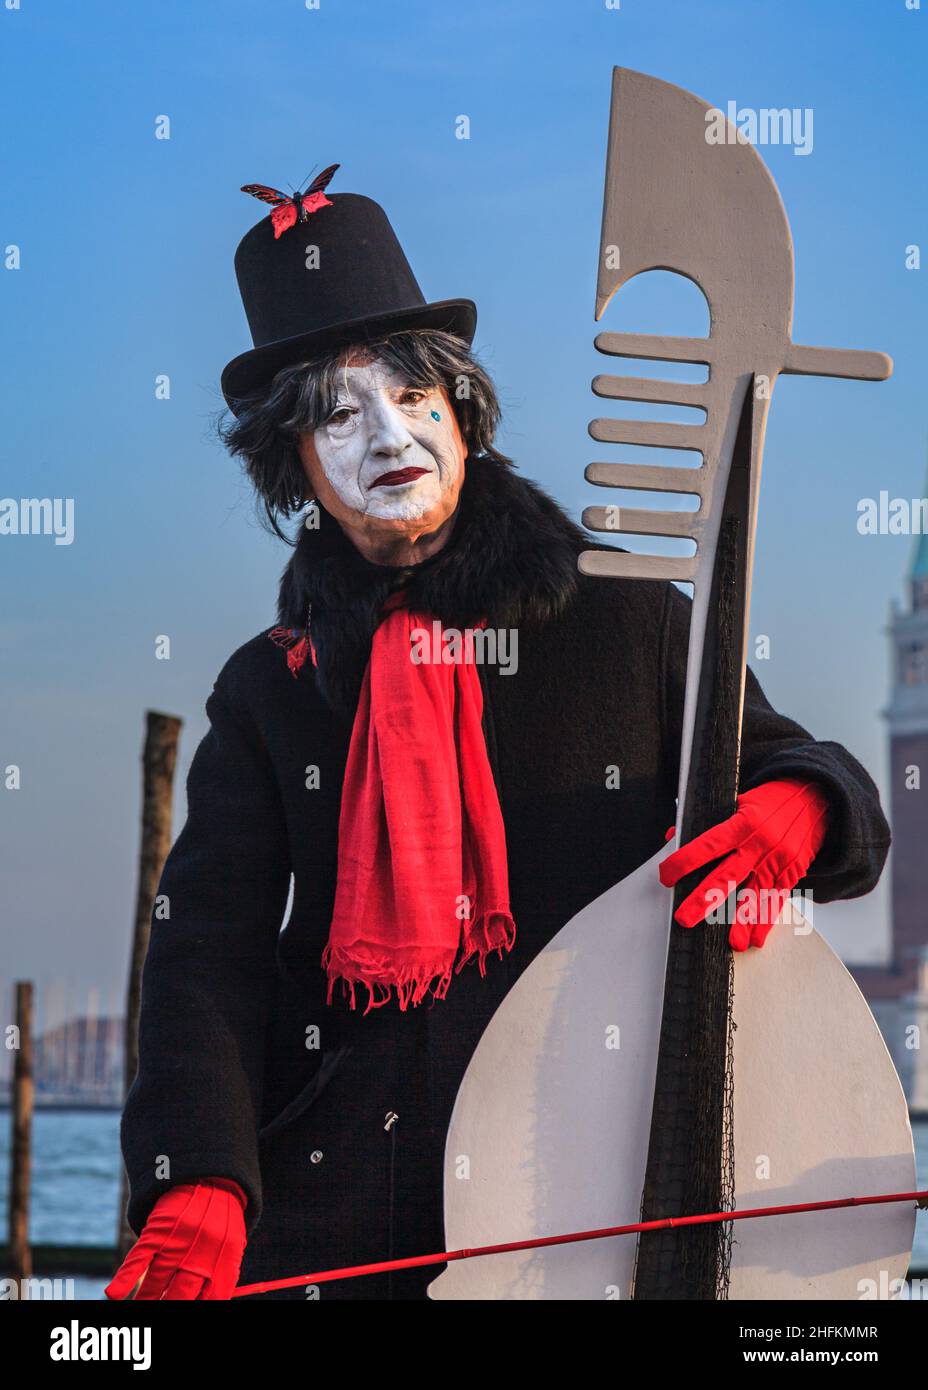 A pierrot or sad clown,  commedia dell'arte character in fancy dress costume at Venice Carnival, Carnivale di Venezia, Italy Stock Photo